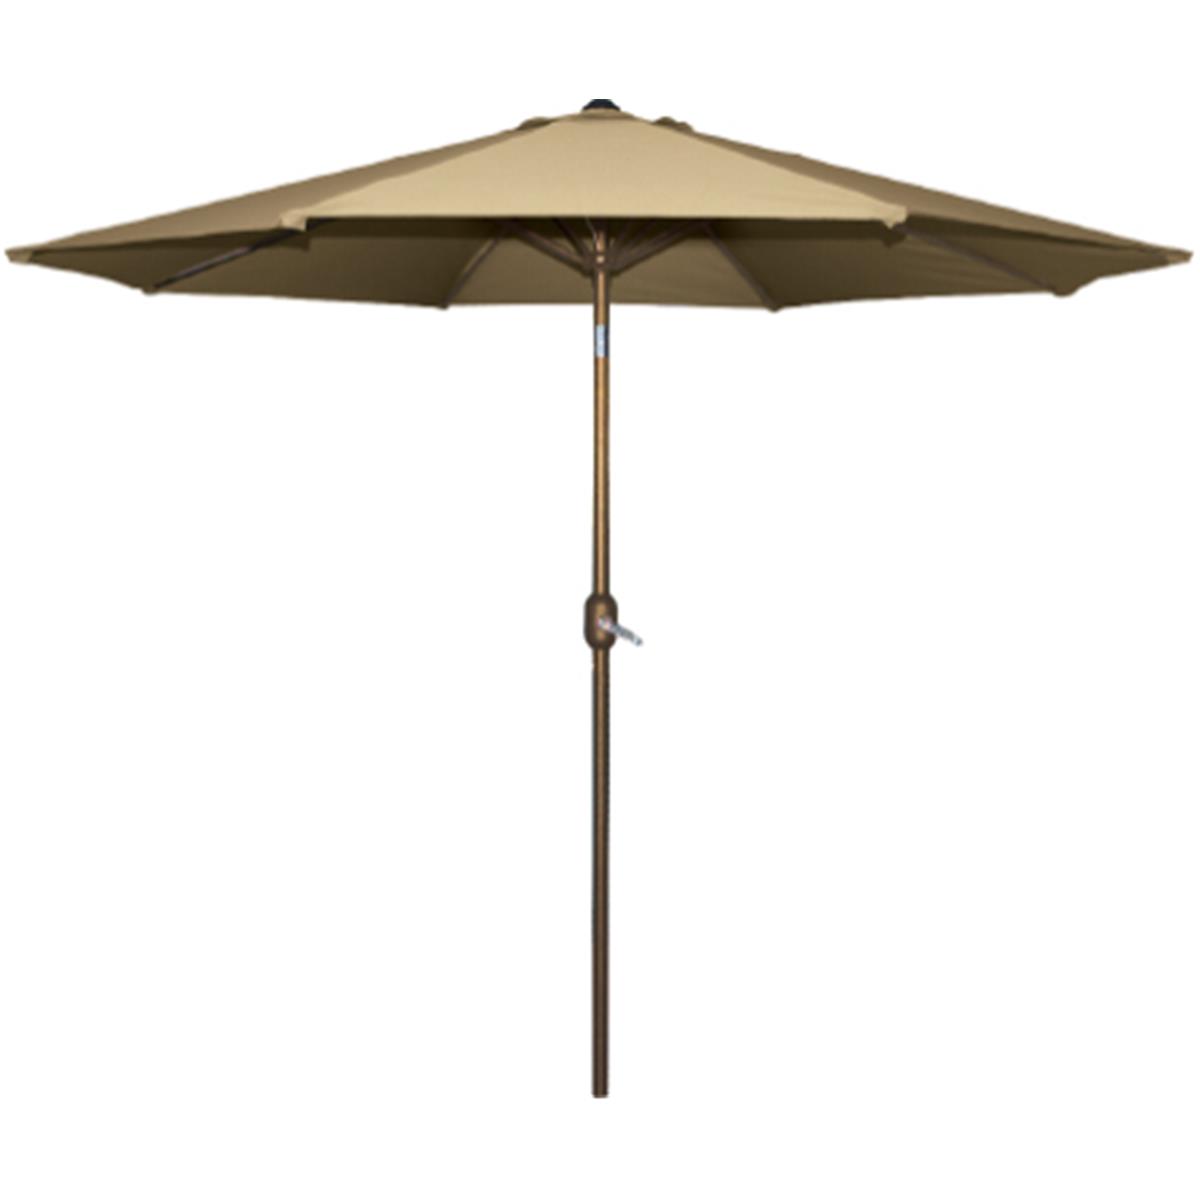 Picture of Bond Manufacturing B07 65677 9 x 9 ft. Aluminum Umbrella, Natural